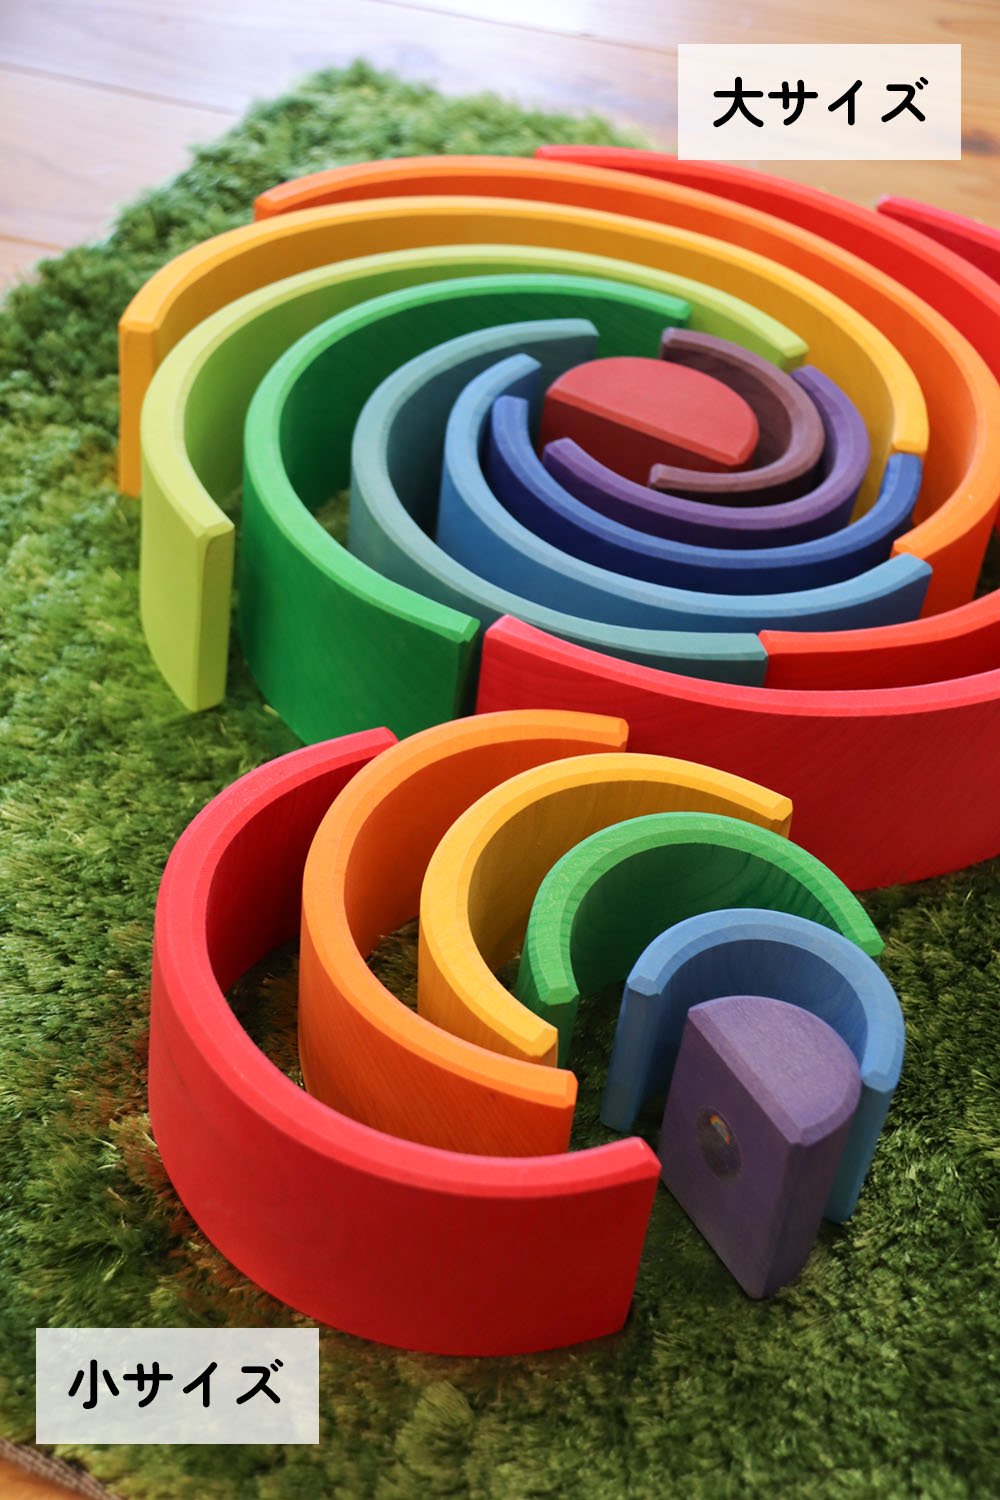 アーチレインボー（小サイズ）- グリムス社のカラフルな虹の積み木。好奇心をくすぐる色鮮やかなおもちゃです。